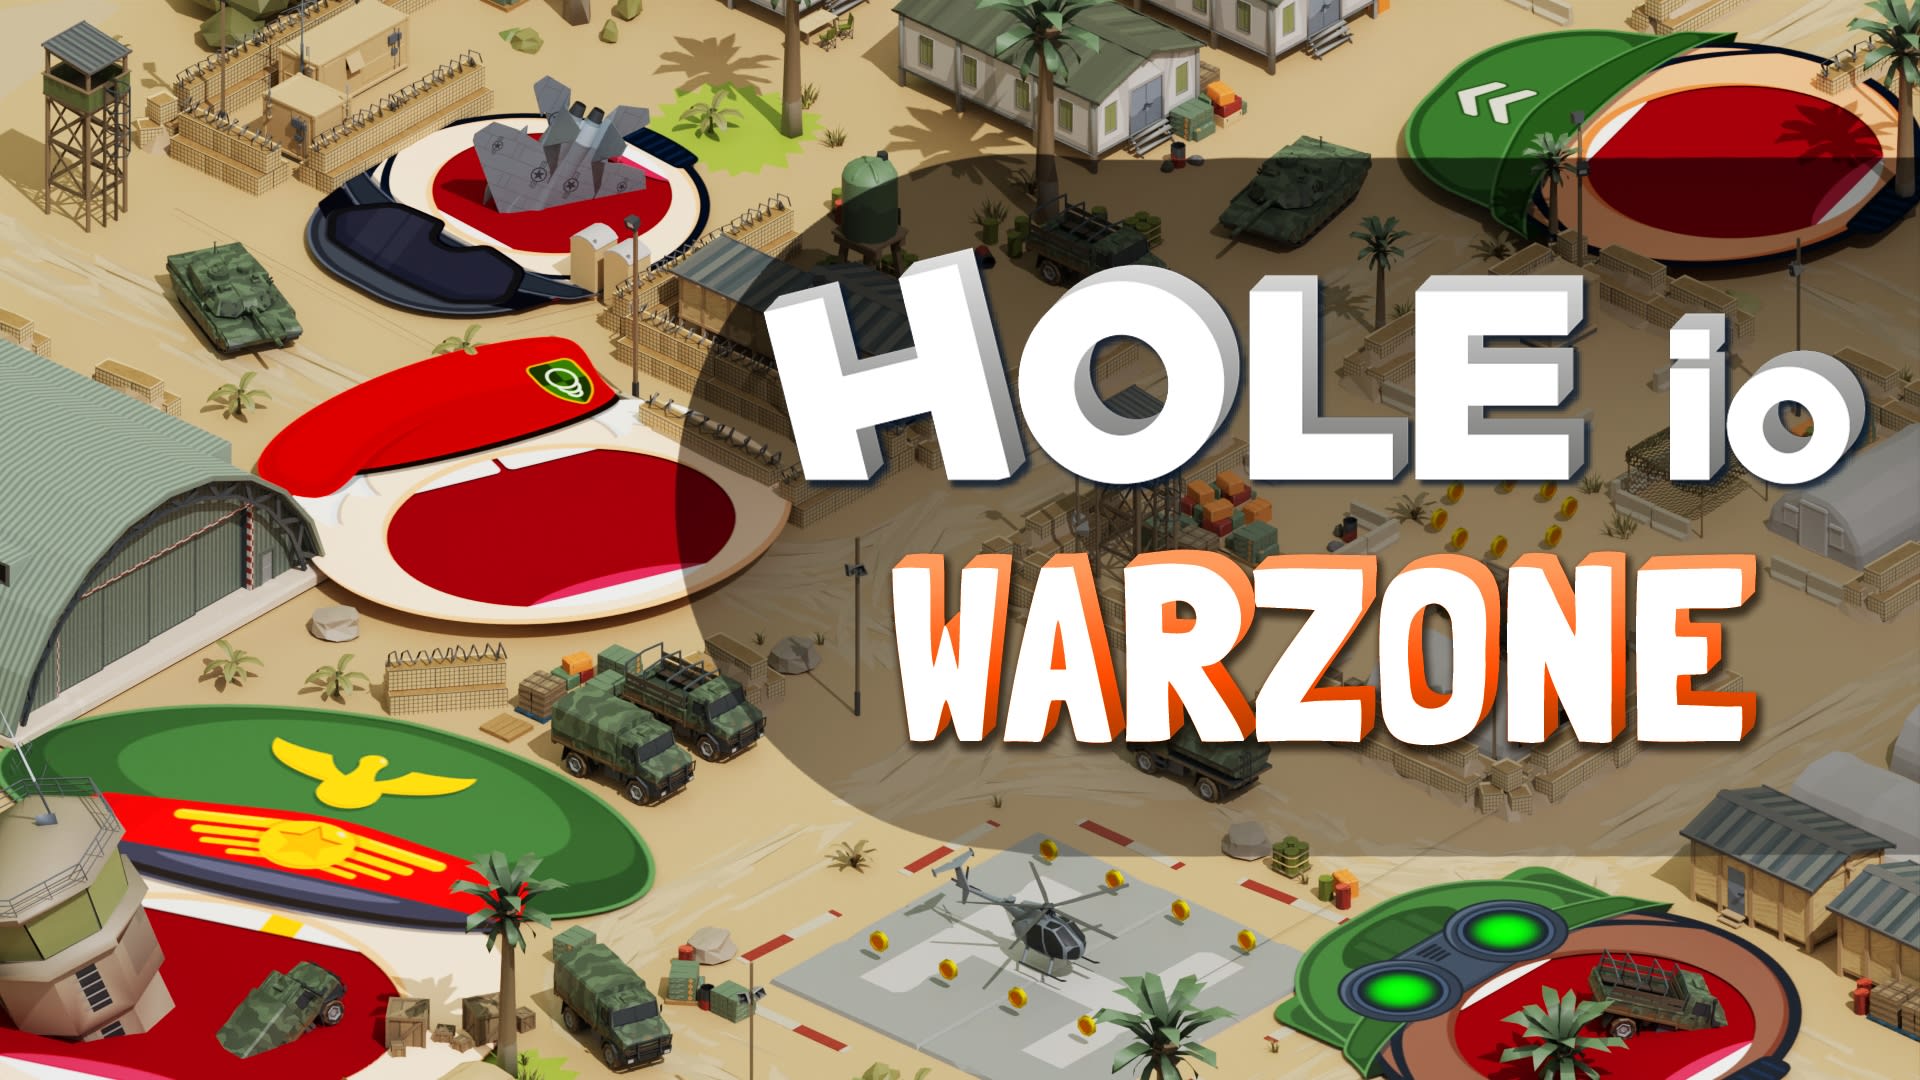 Hole io: Warzone DLC